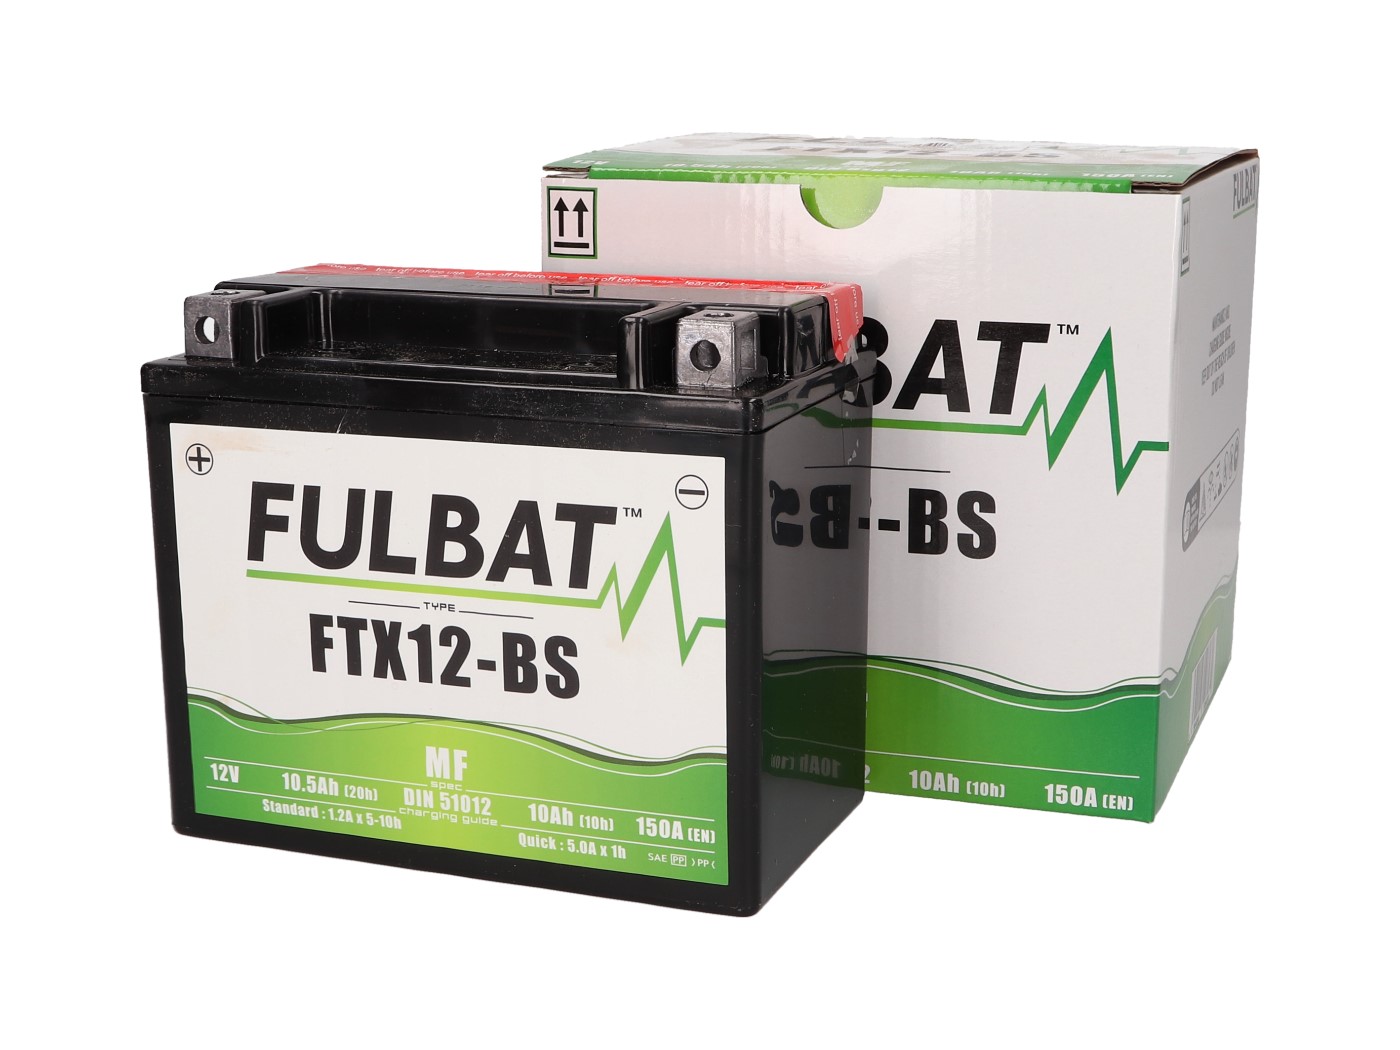 Fulbat FTX12-BS MF Batterie